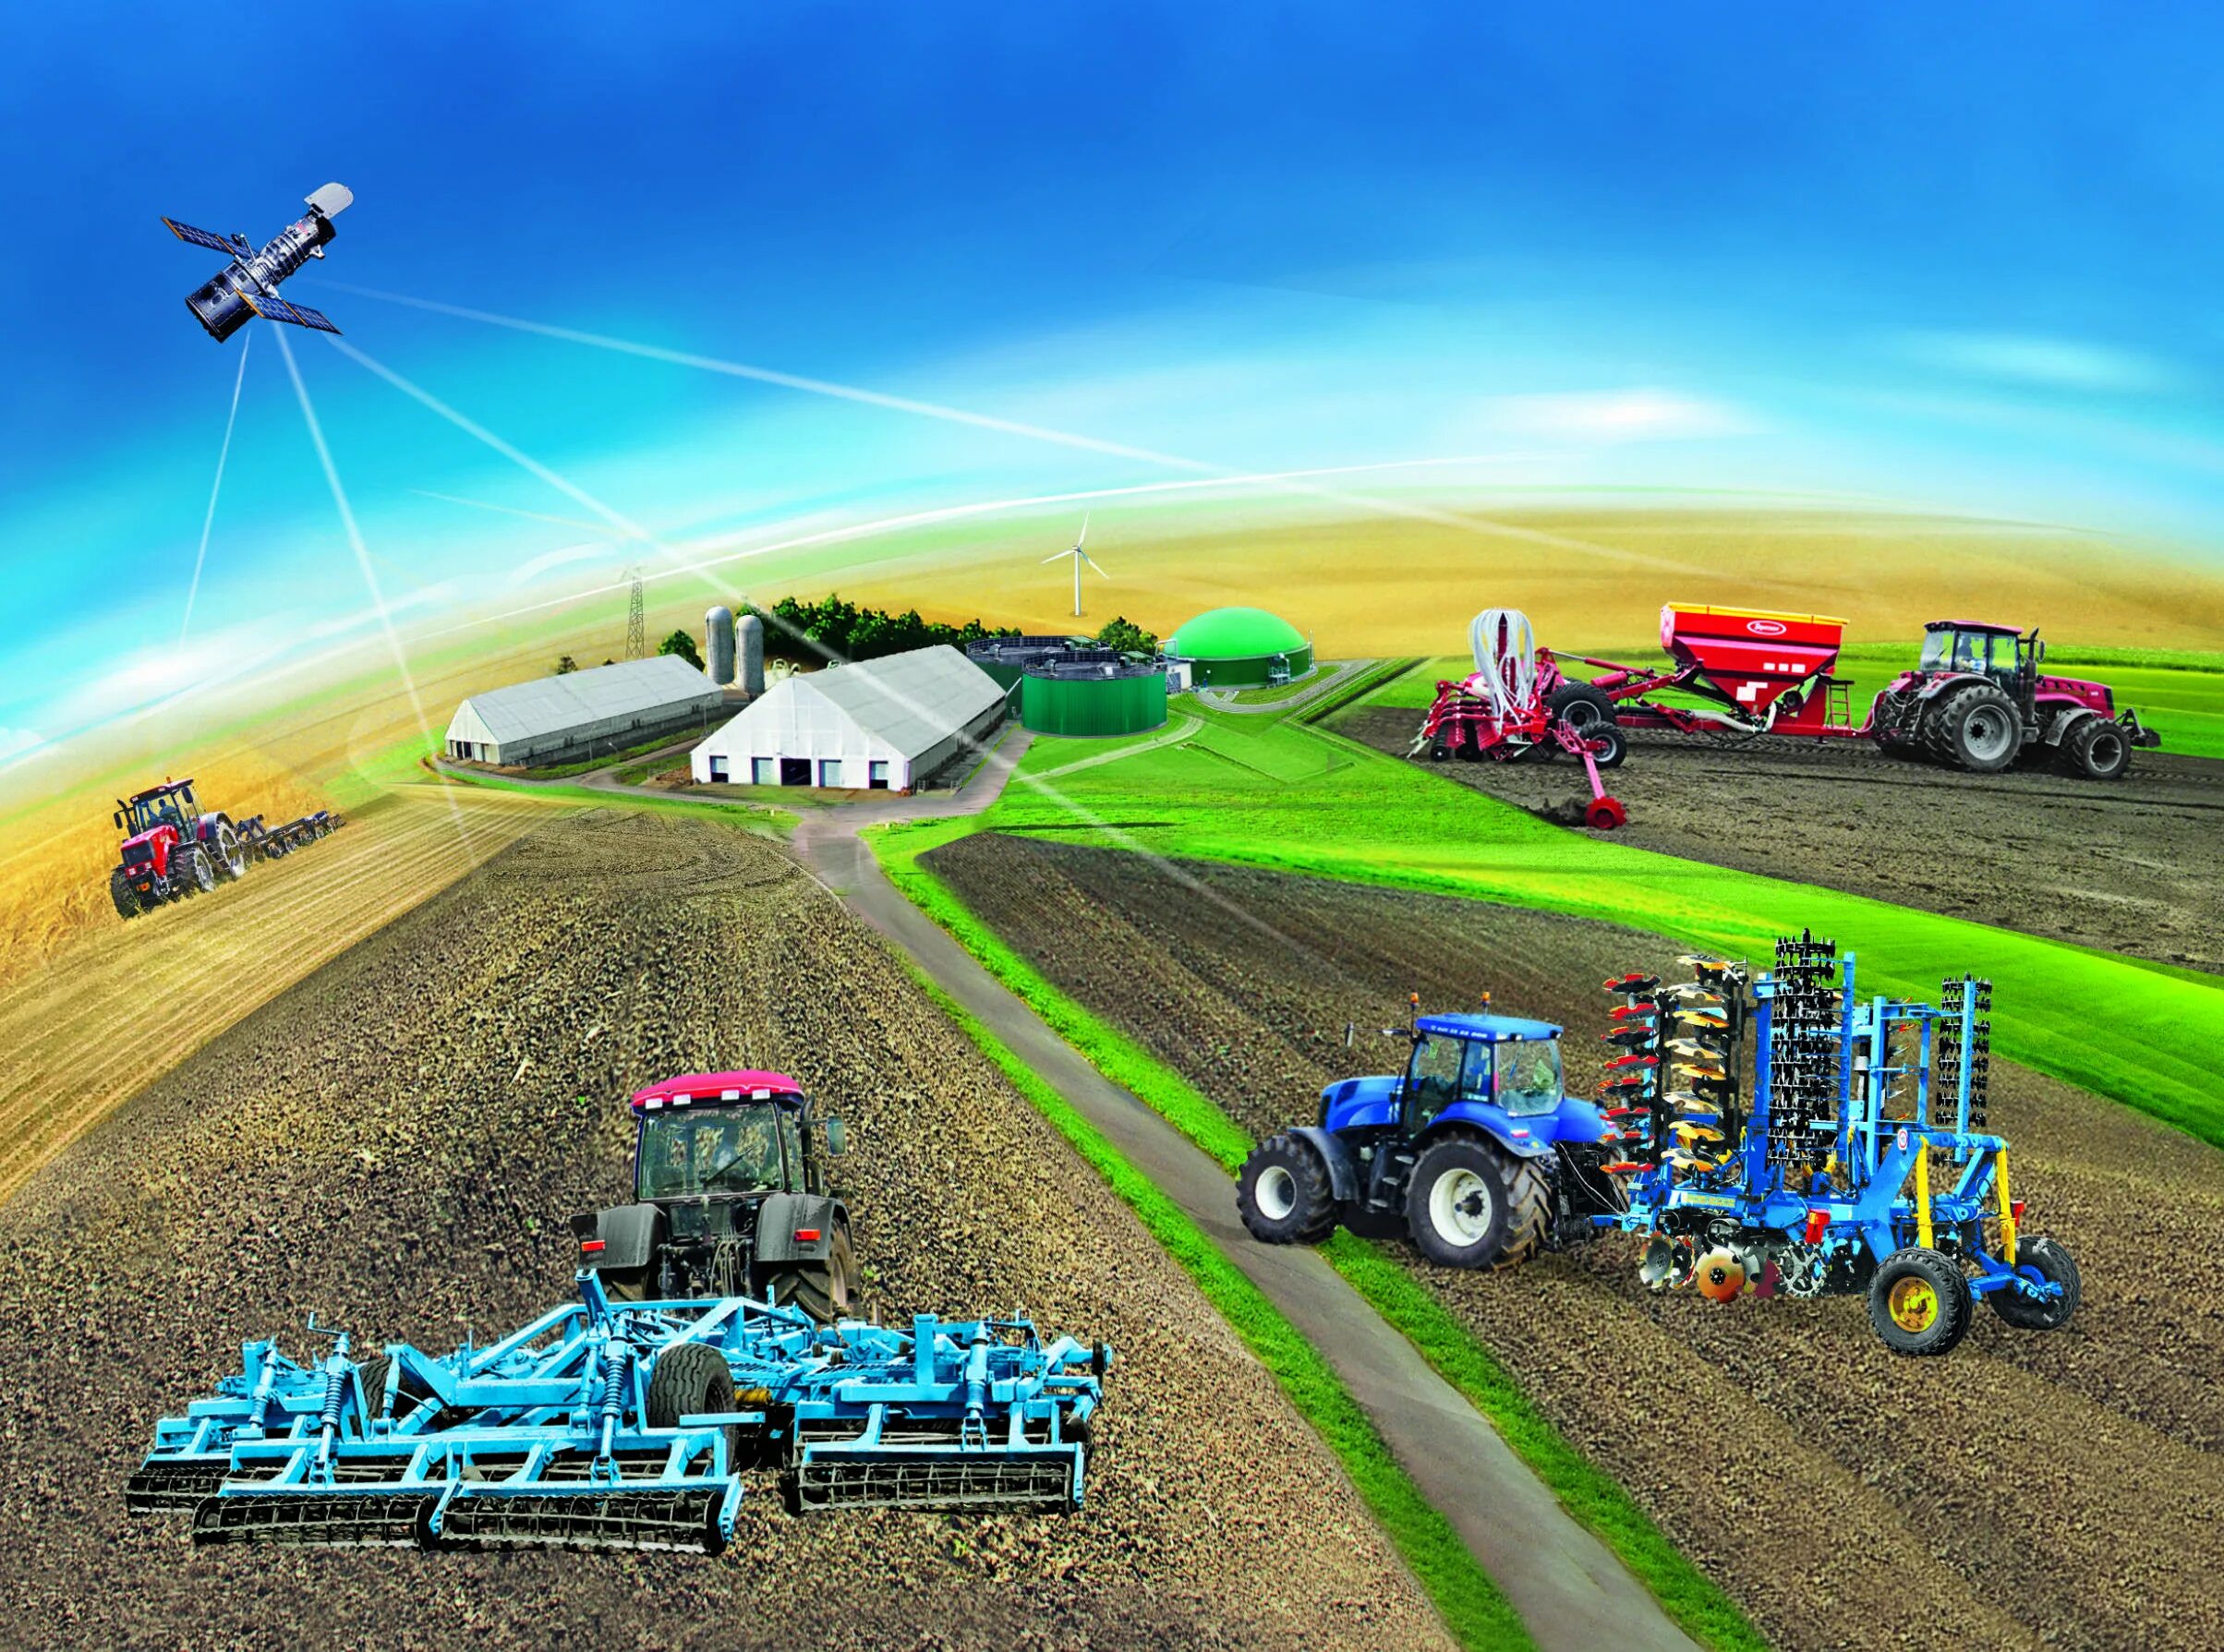 Технология сельскохозяйственного производства. Технологии точного земледелия. Современное сельское хозяйство. Инновации в сельском хозяйстве. Точное земледелие в сельском хозяйстве.